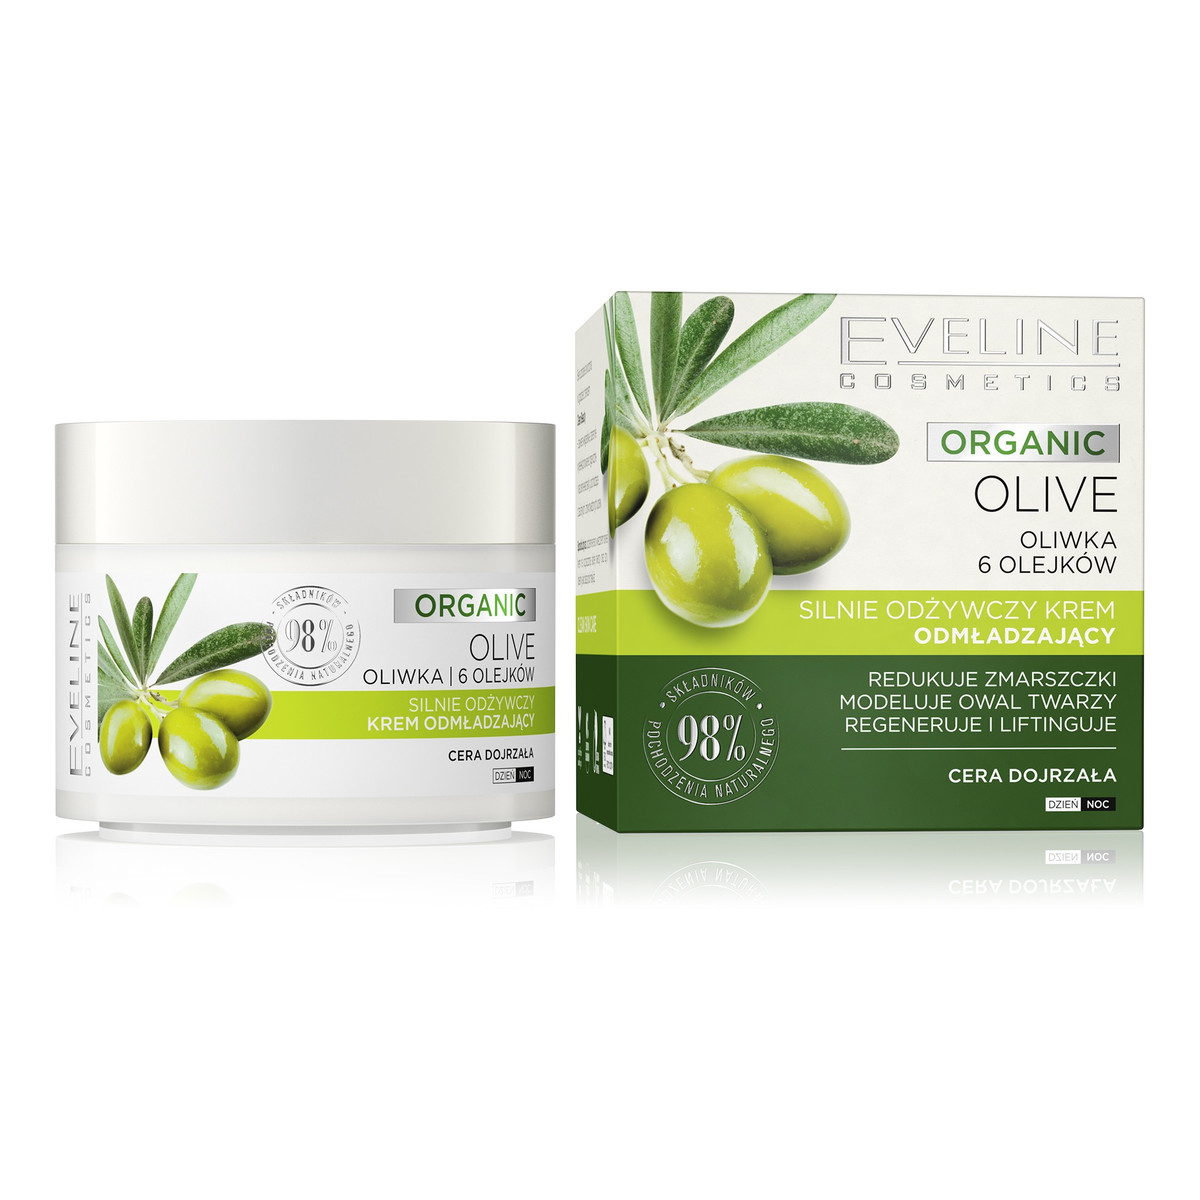 Eveline Organic Olive Silnie Odżywczy Krem odmładzający na dzień i noc - cera dojrzała 50ml